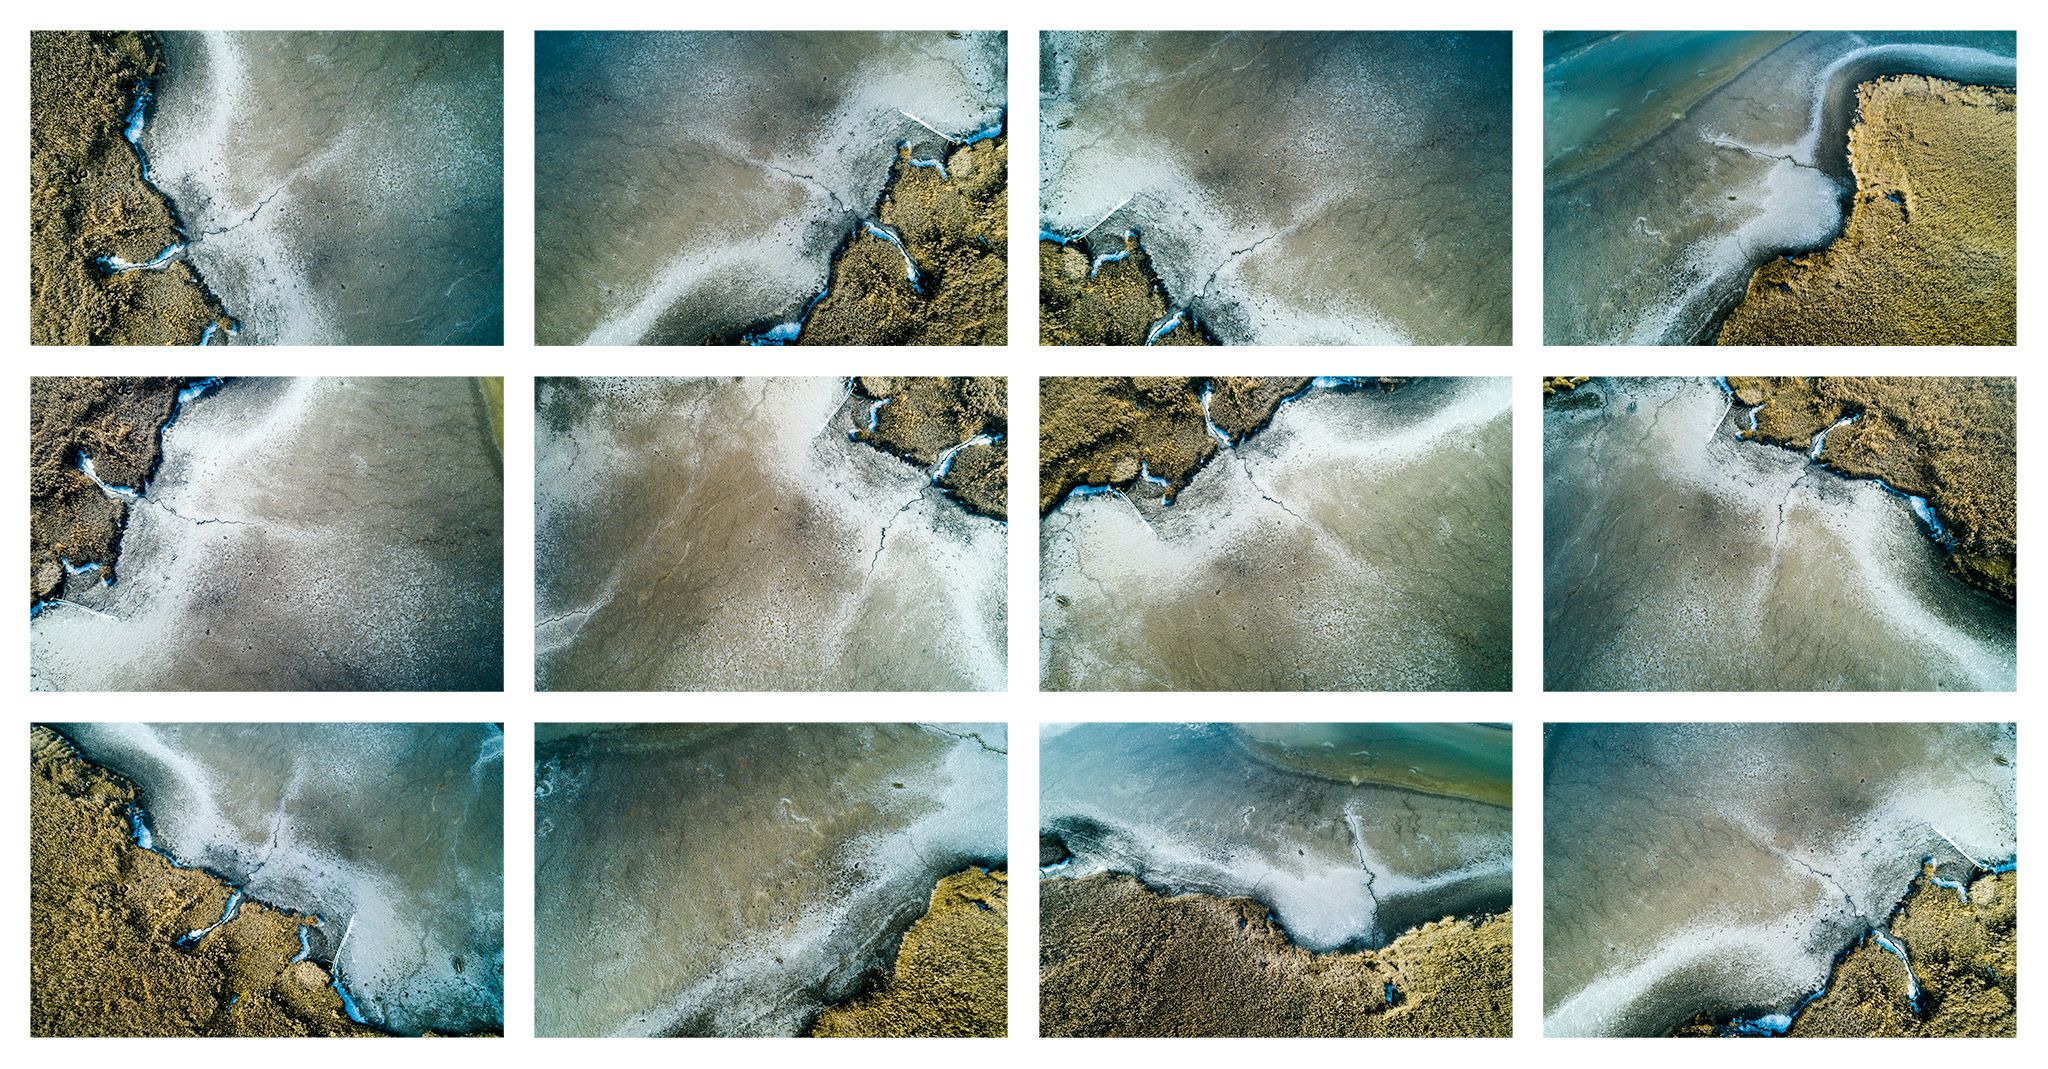 Stefan Kuhn's "Lakeshore Operations / Ground Level Serie #04" Drohnen Fotografie zeigt ein Seeufer mit 12 Motiven in einem Bild.